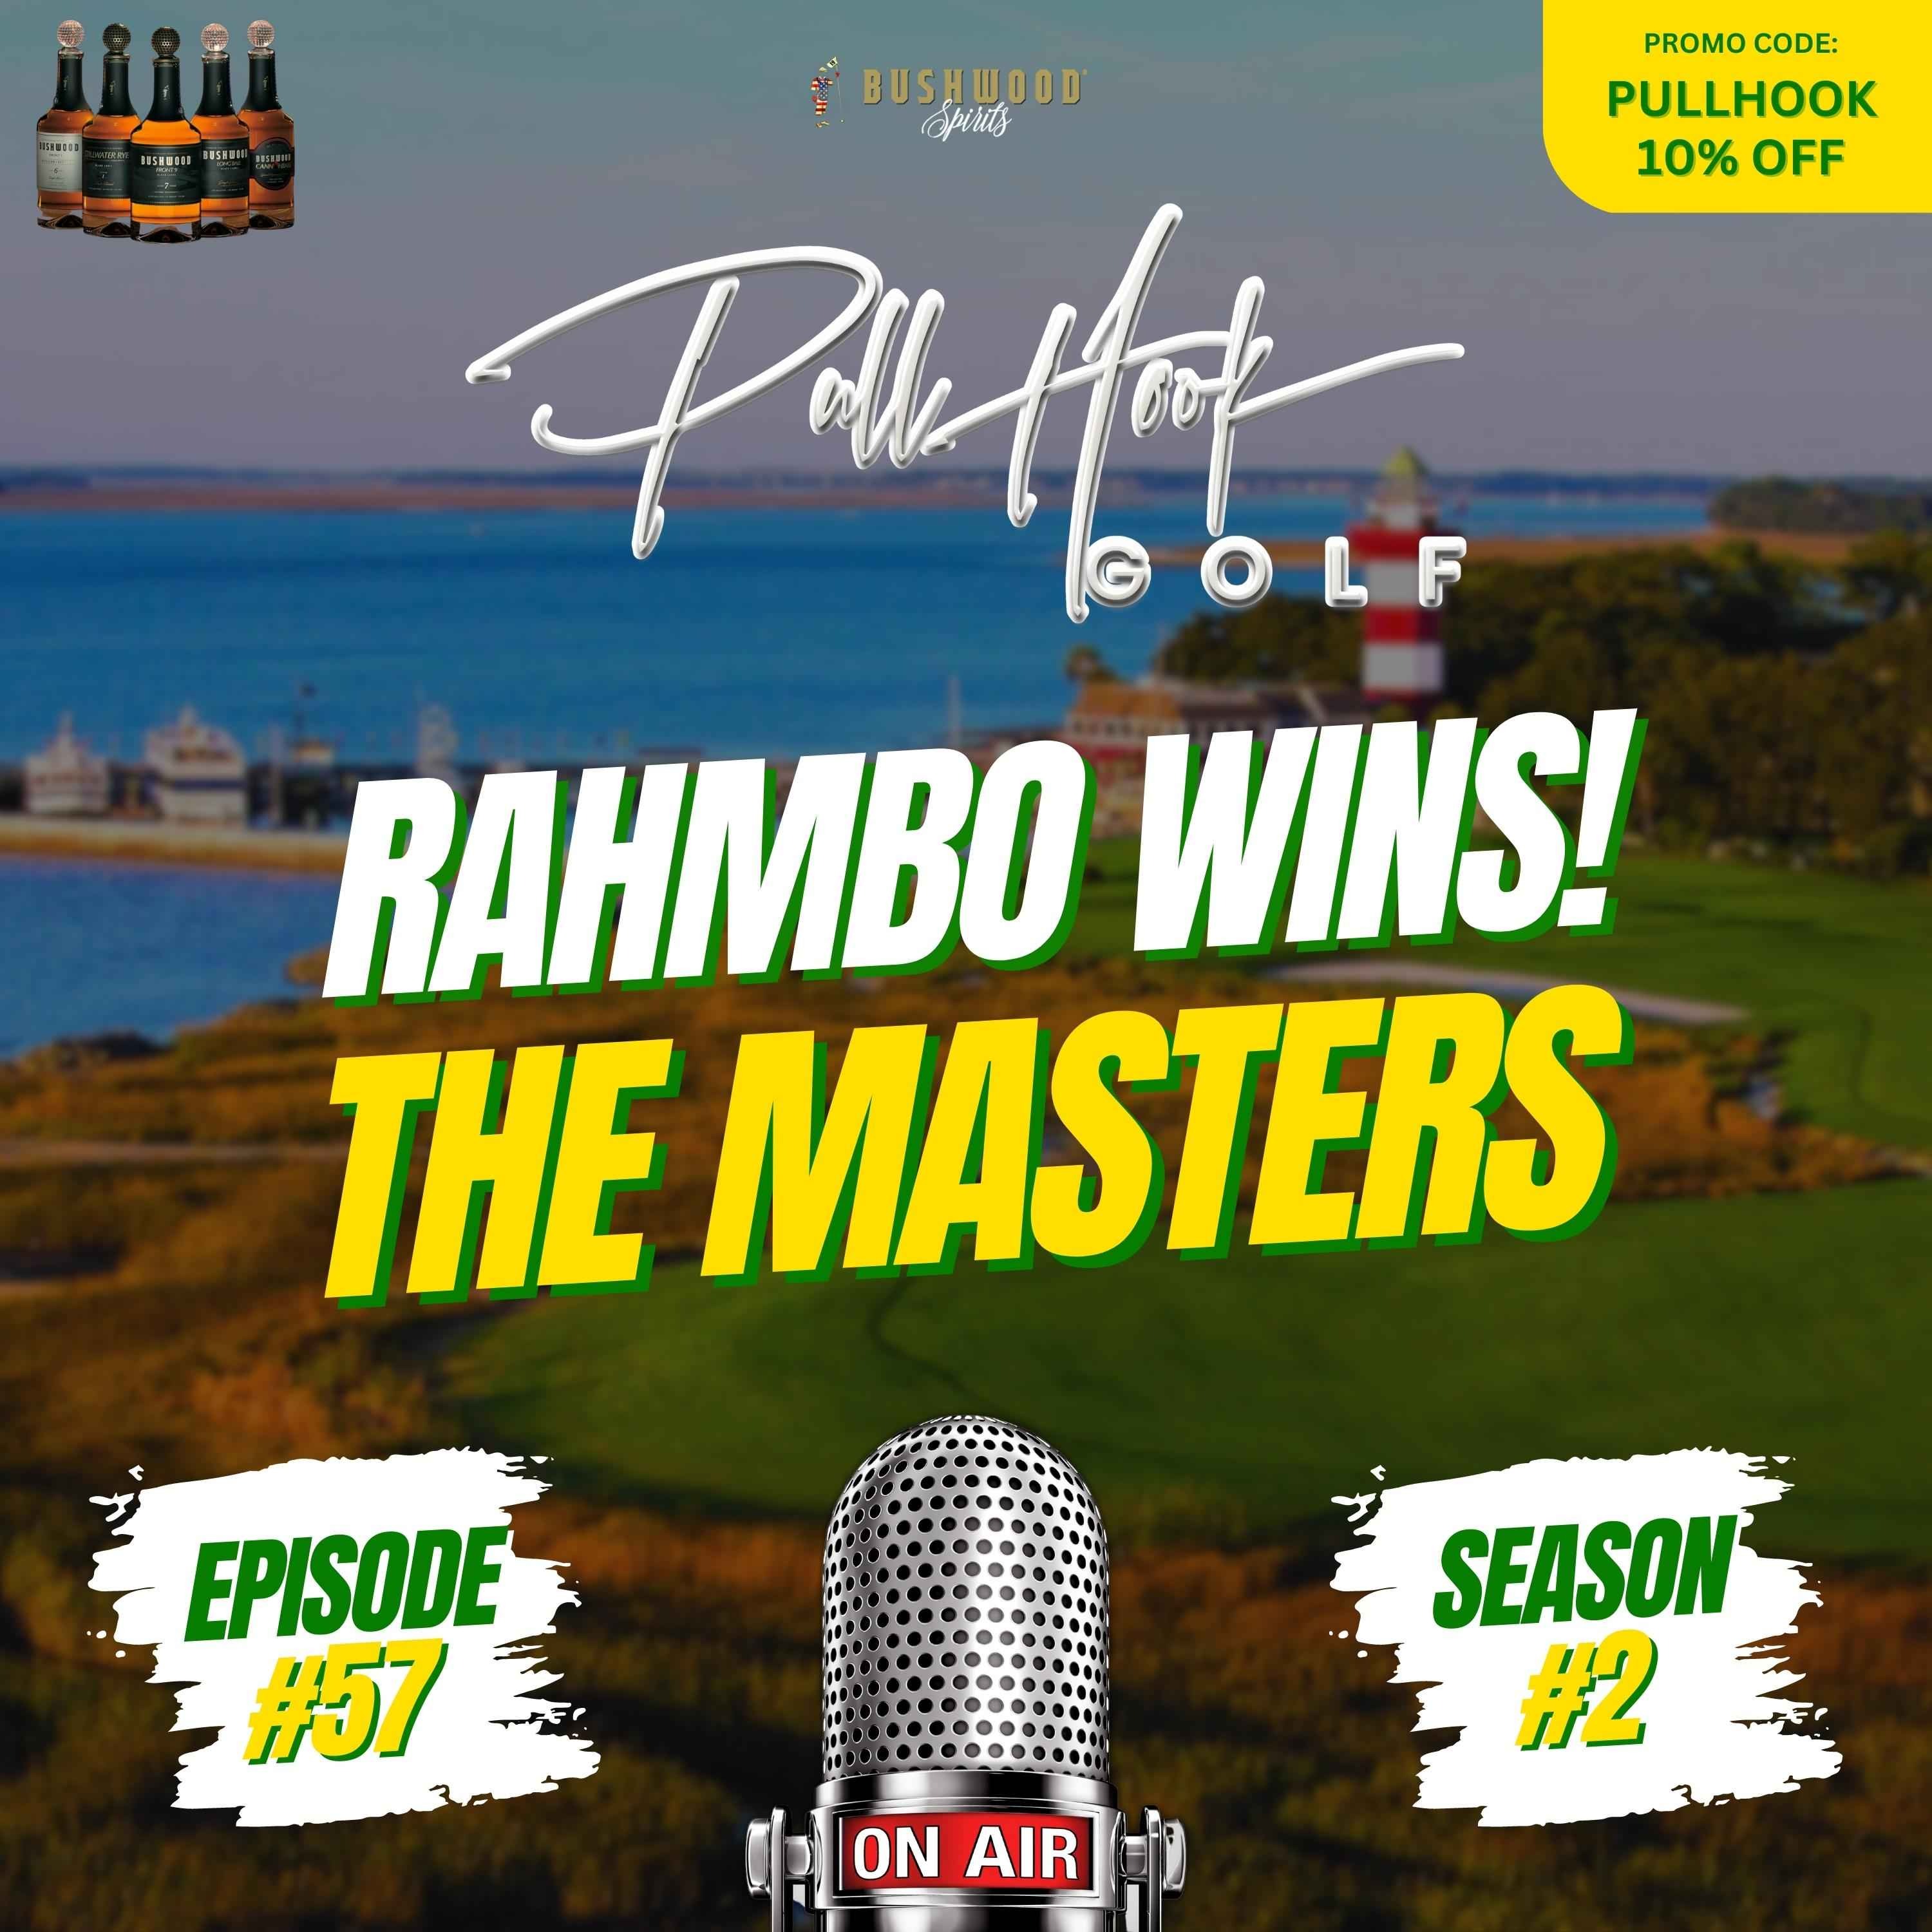 Rahmbo Wins! The Masters